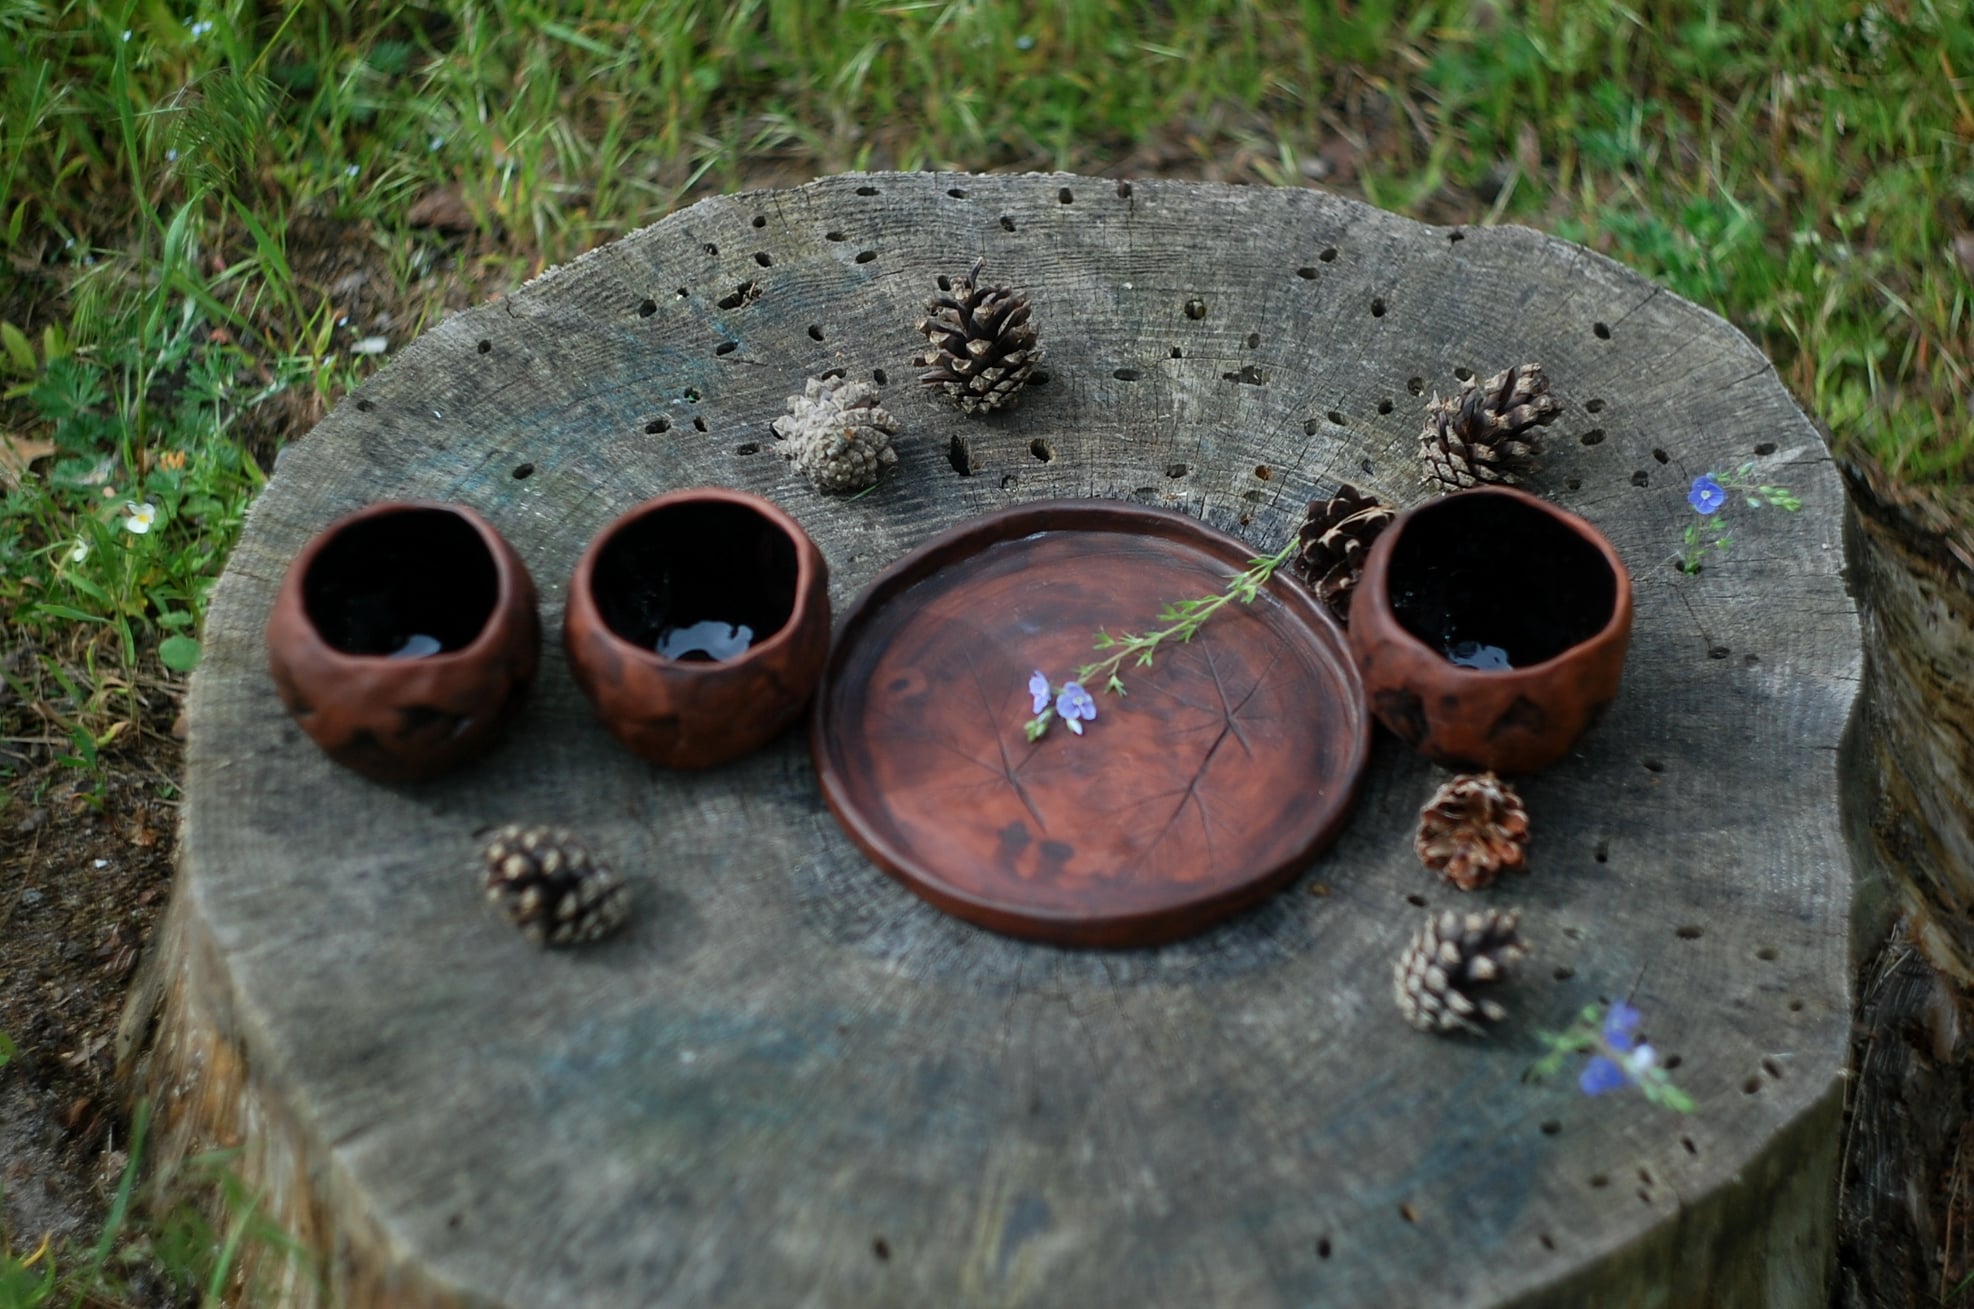 Handmade pottery mug set for 3 or 4 mugs "Stones" and large plate